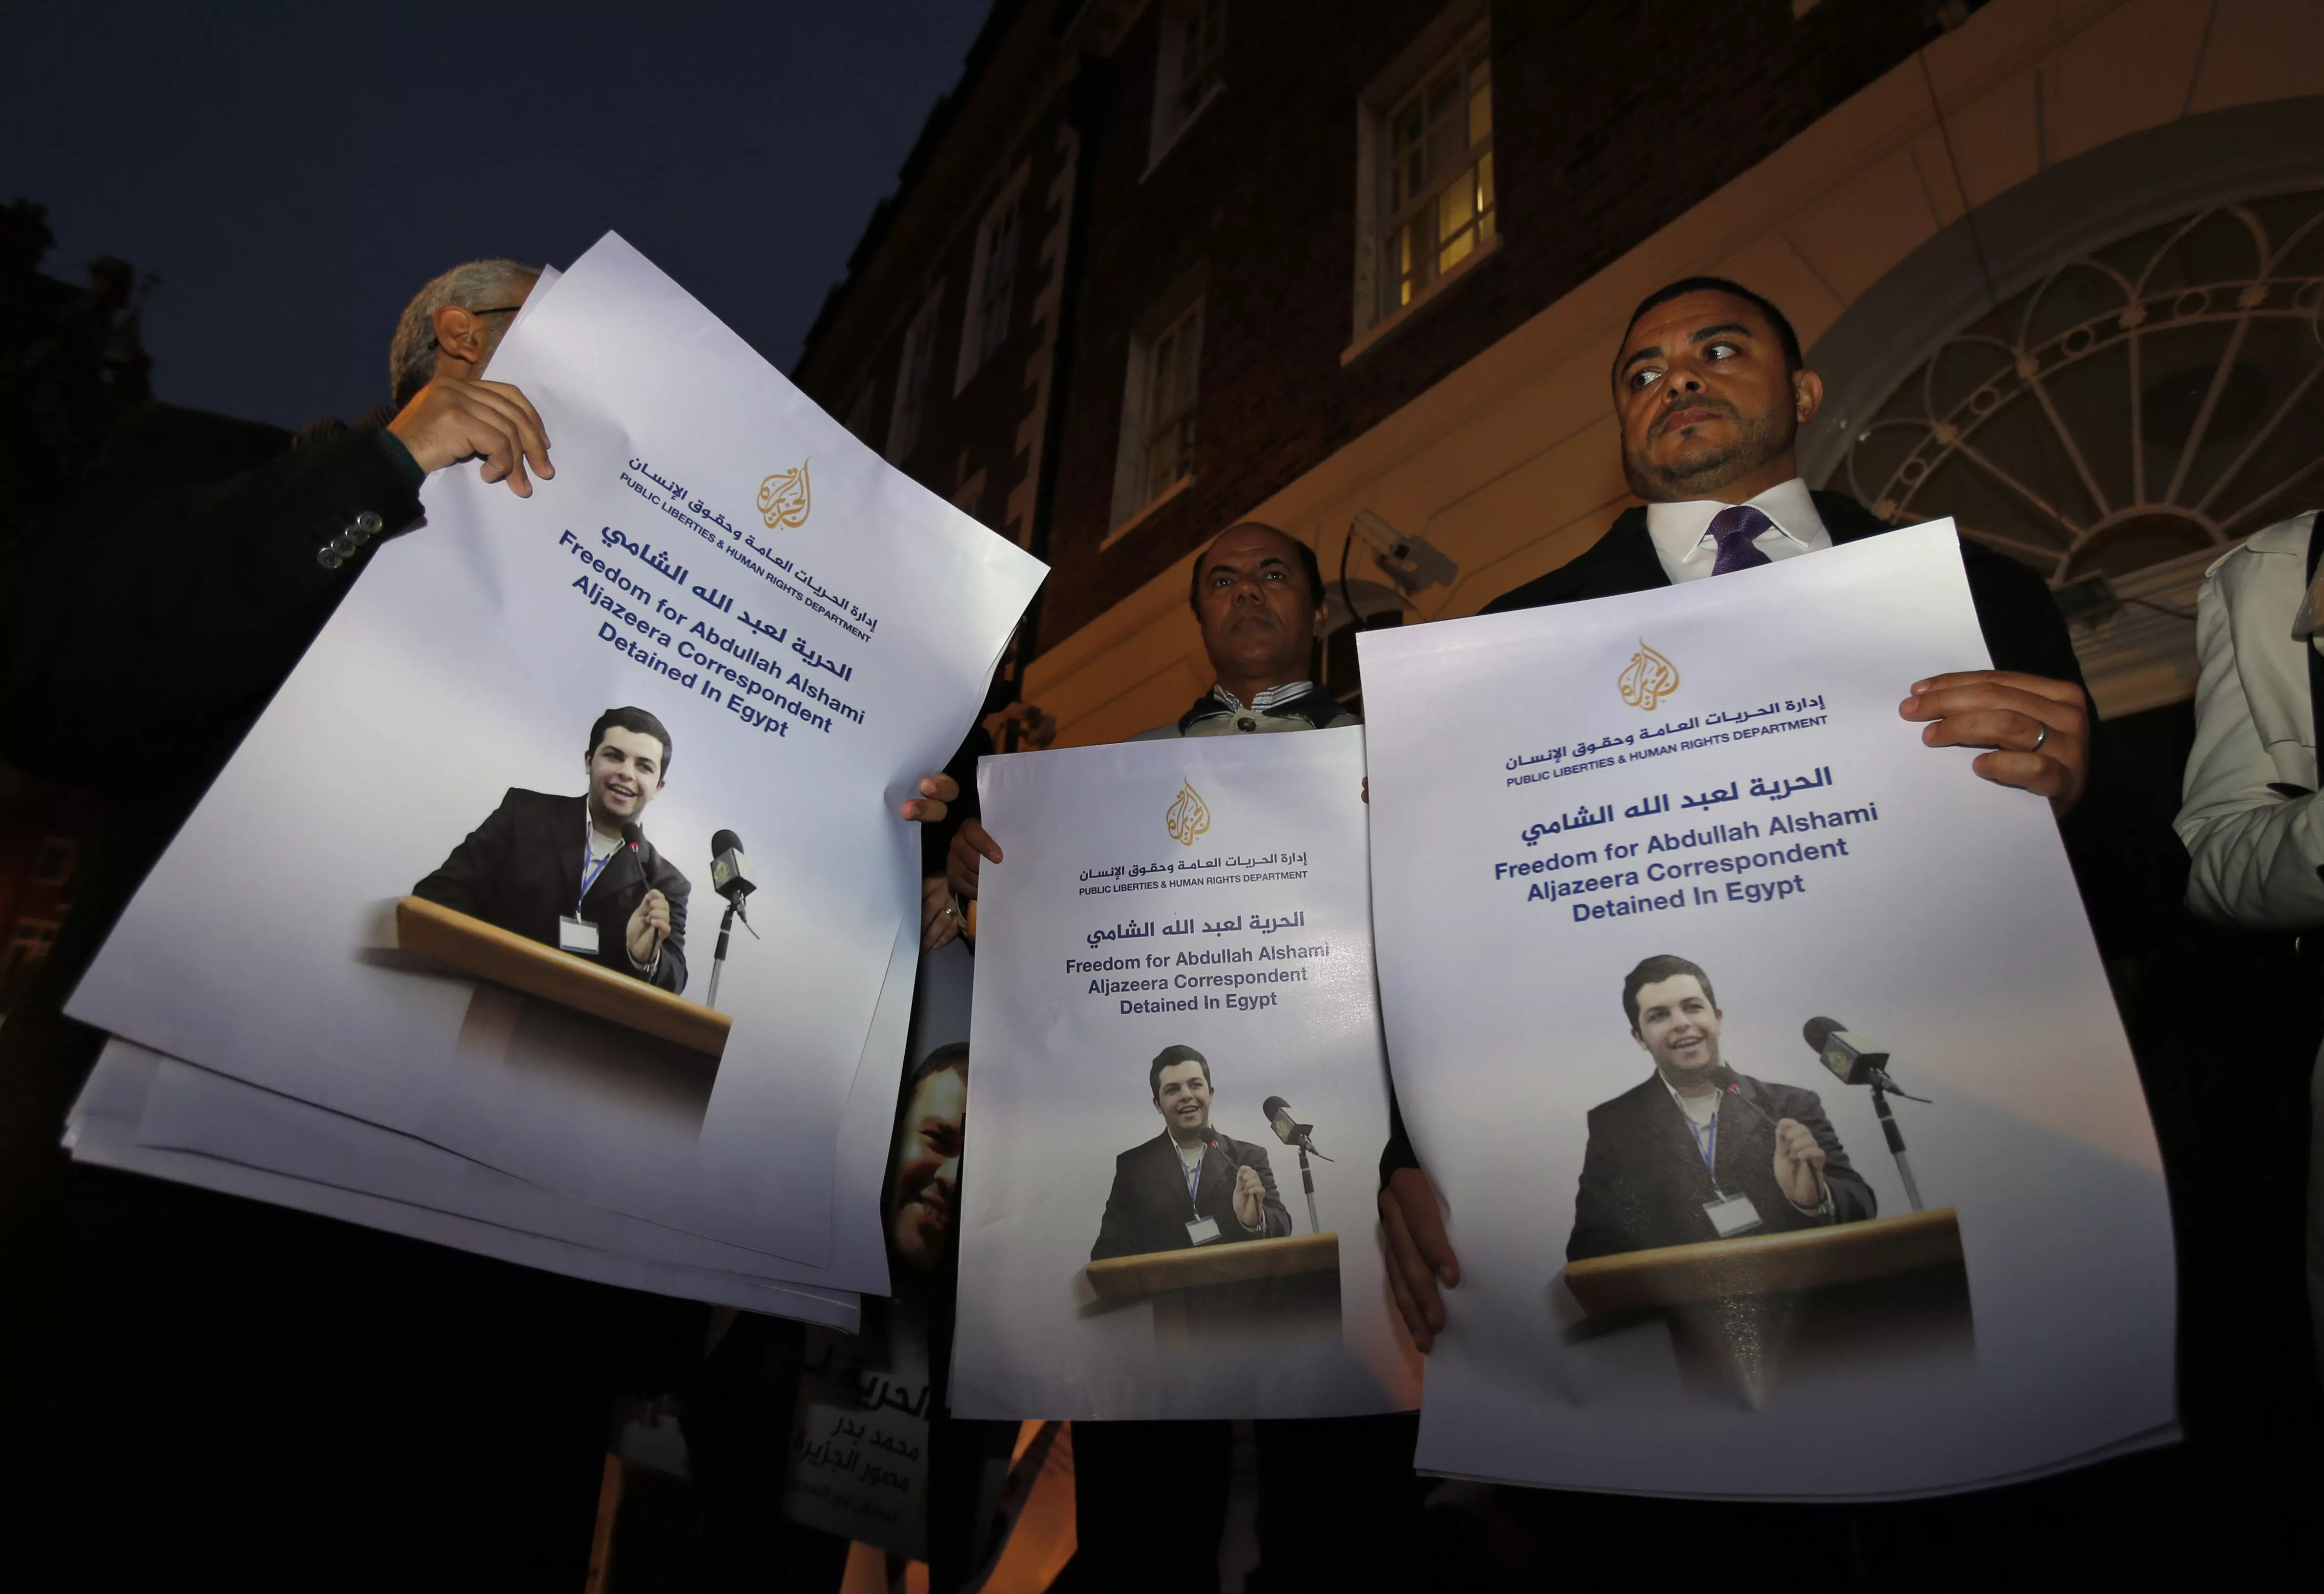 הפגנה בלונדון לשחרור עיתונאי אל-ג'זירה